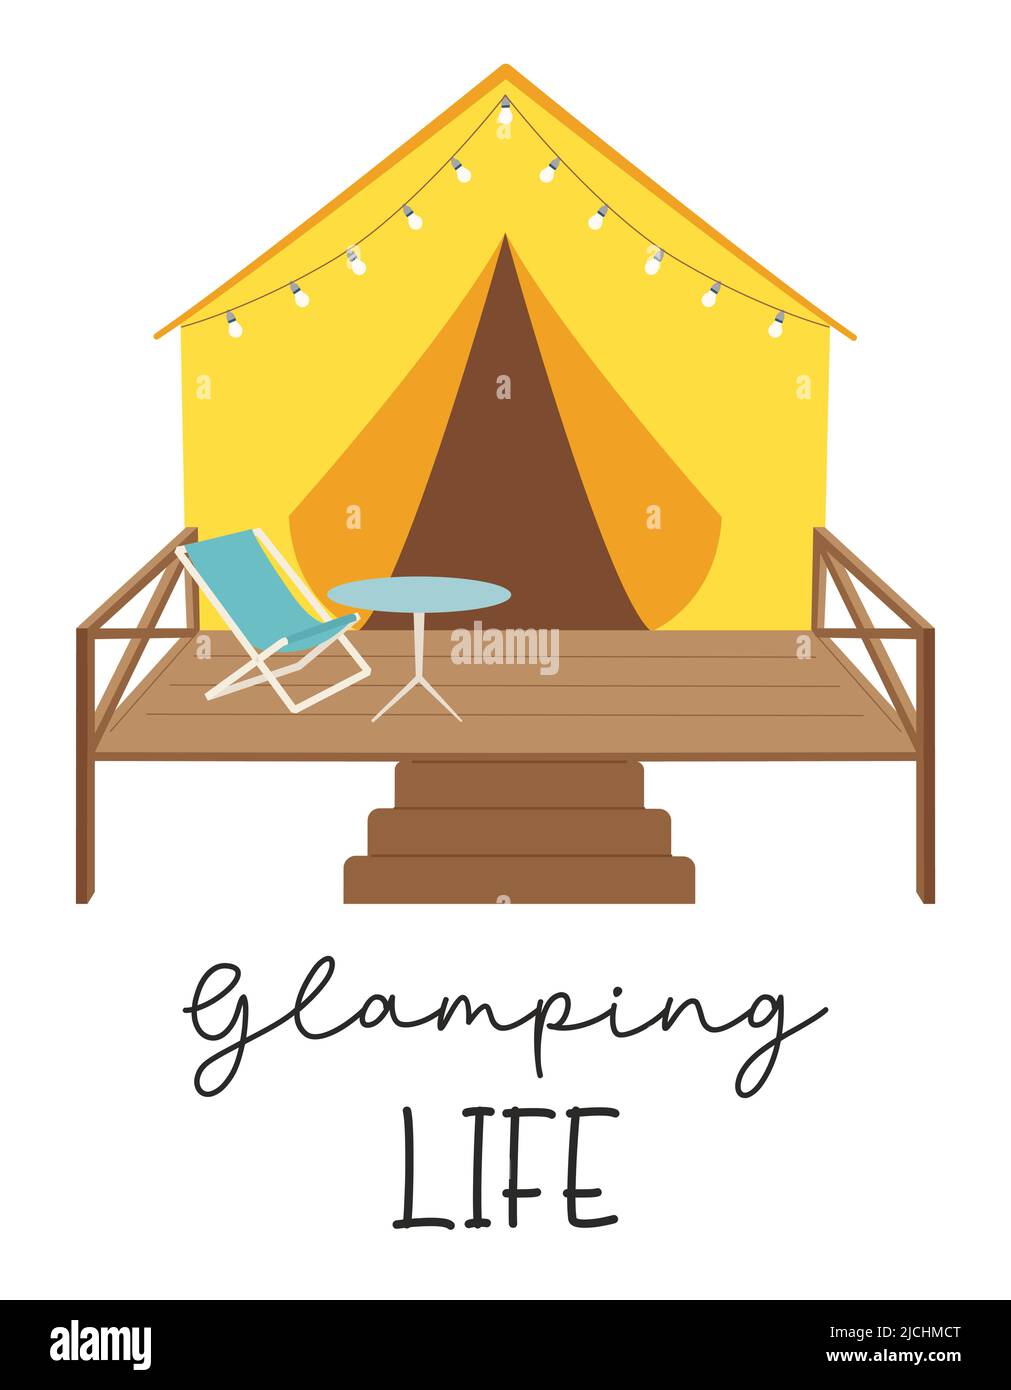 Tente de glamping avec guirlande, table et chaise sur la terrasse. La phrase manuscrite - Glamping Life. Camping glamour. La carte de loisirs de plein air. FL Illustration de Vecteur